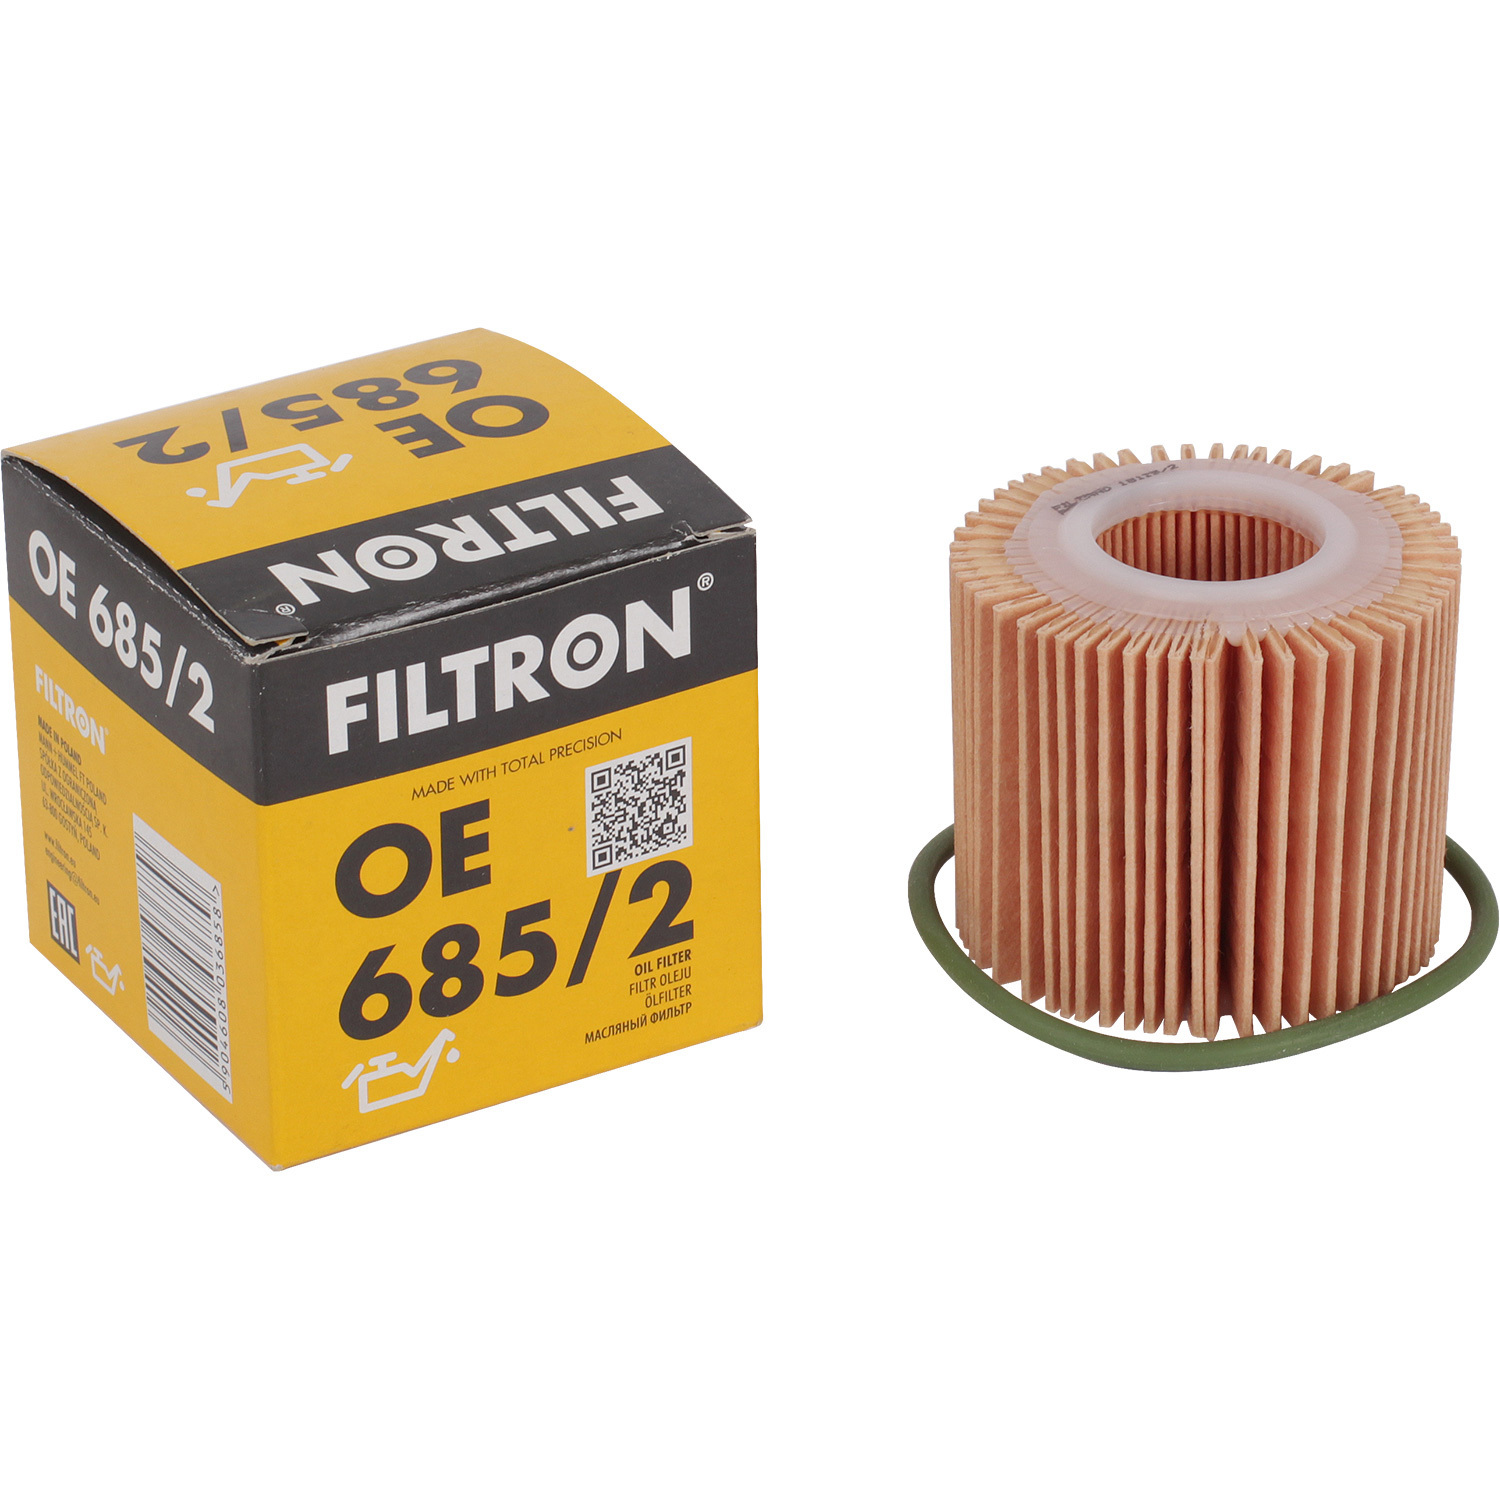 Фильтры Filtron Фильтр масляный Filtron OE6852